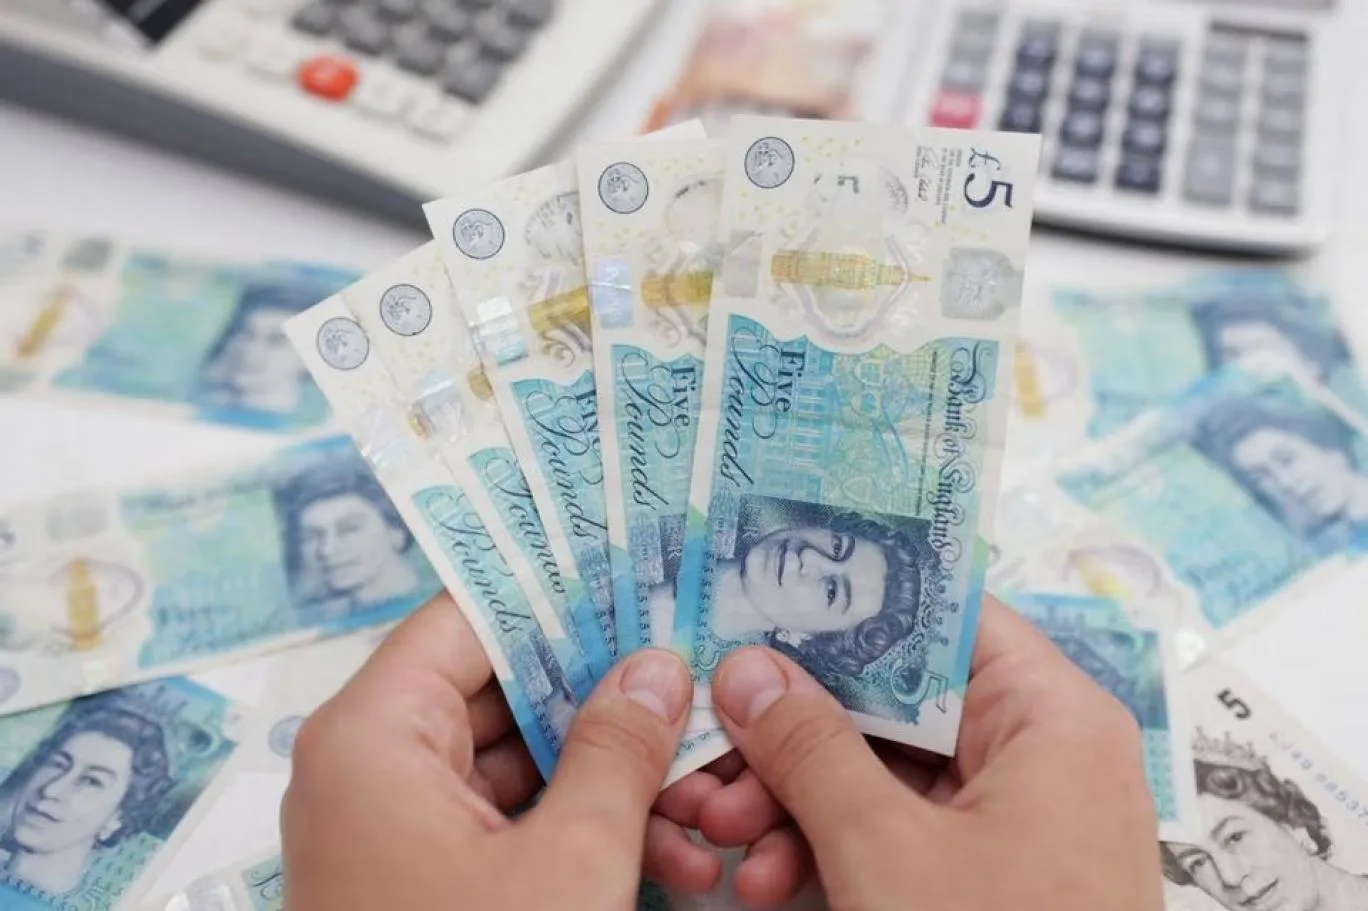 بريطانيا: صندوق دعم الأسرة يقدم دفعة نقدية مجانية بقيمة 145 جنيه إسترليني 